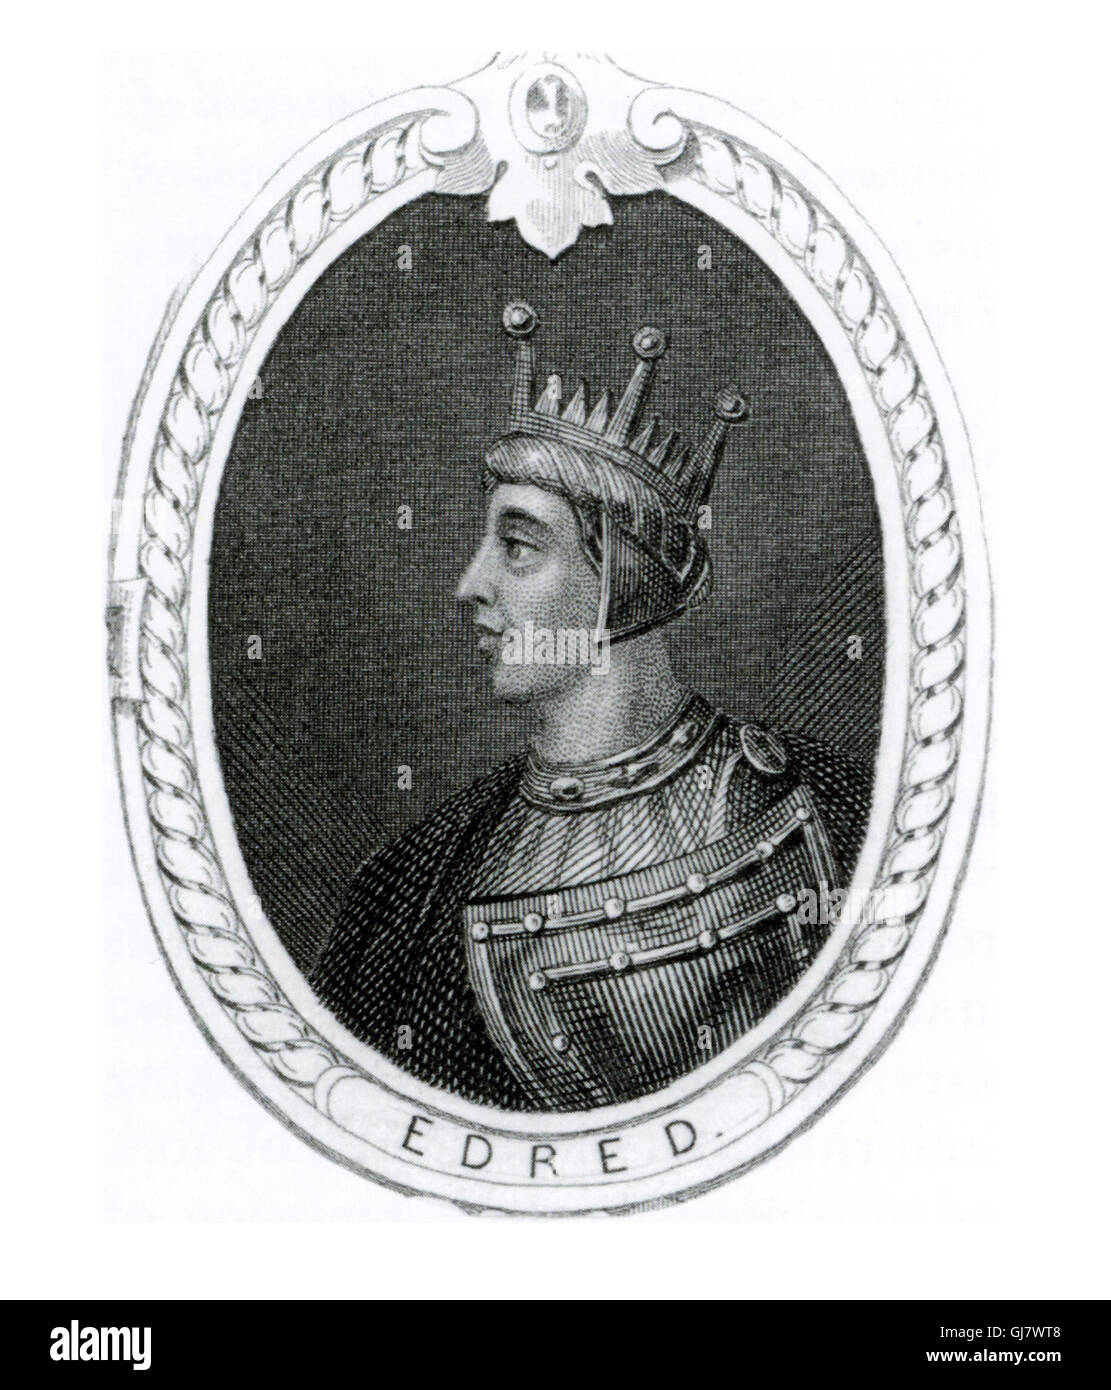 Eadred (anche Edred) (923 - 23 Novembre 955) era re dell'inglese da 946 fino alla sua morte nel 955, in successione a suo fratello maggiore Edmund I. visto qui in un dominio pubblico dell'immagine. Foto Stock